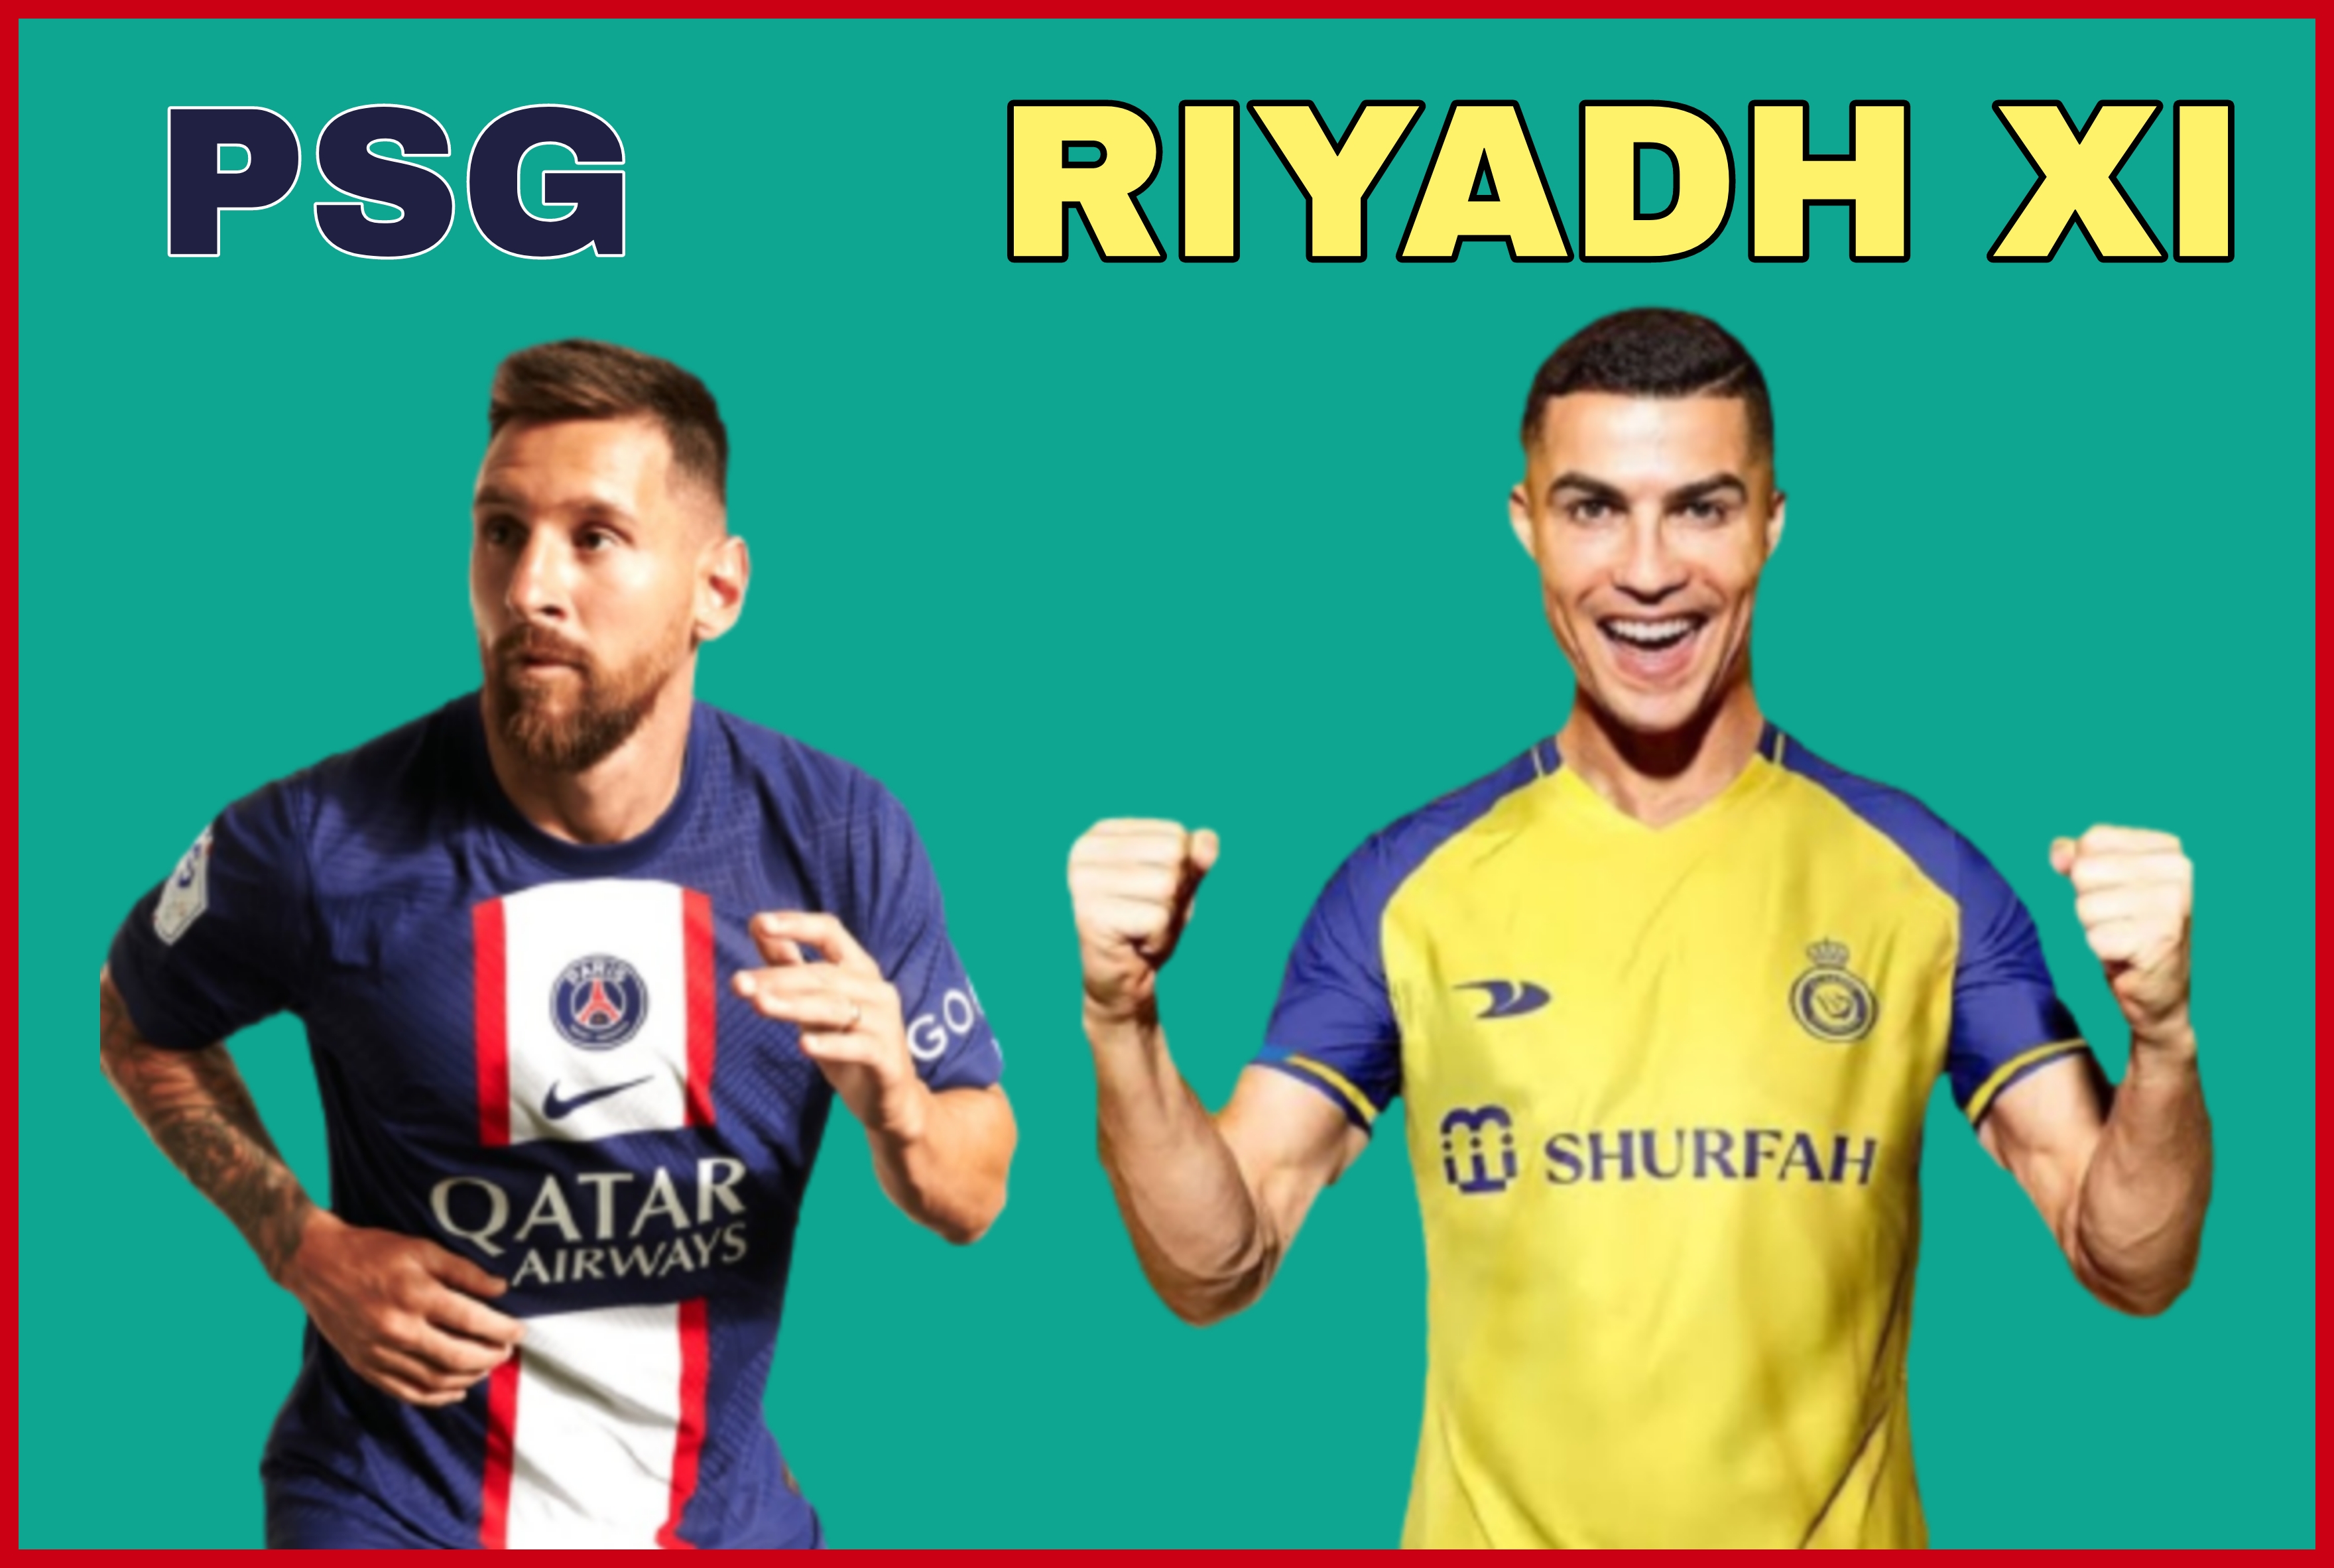 psg next match Riyadh XI vs psg